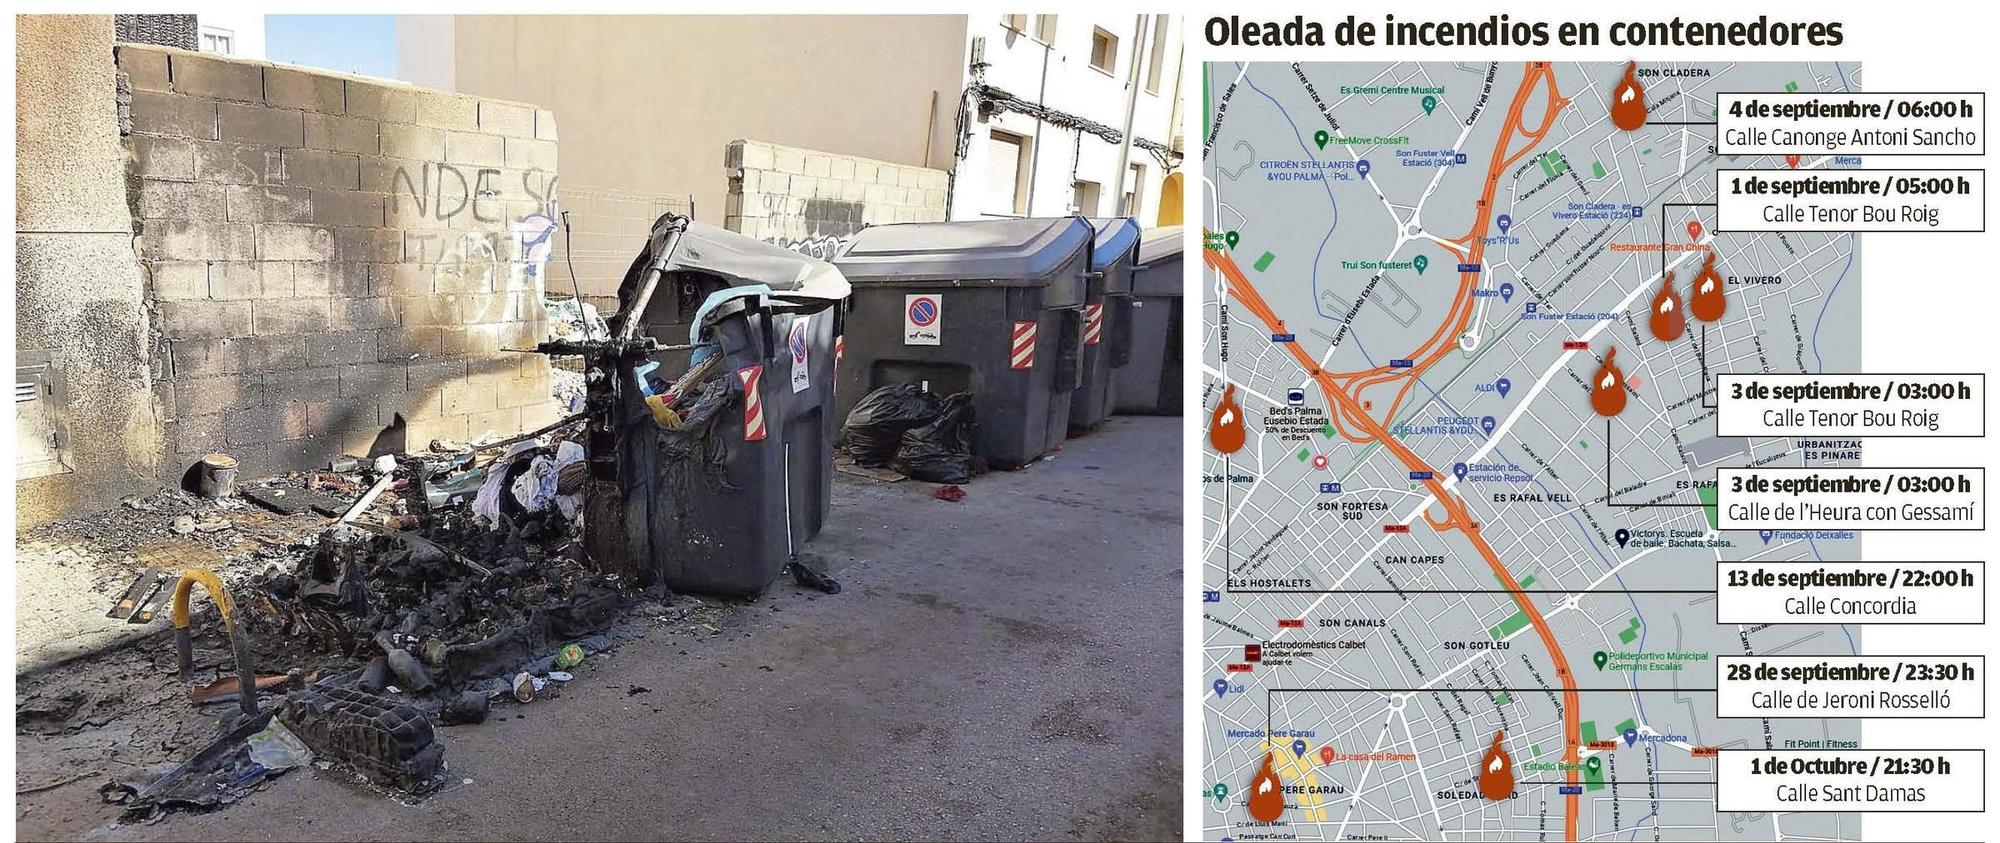 El último contenedor de basura destruido por el fuego, en la calle Sant Damas de Palma.